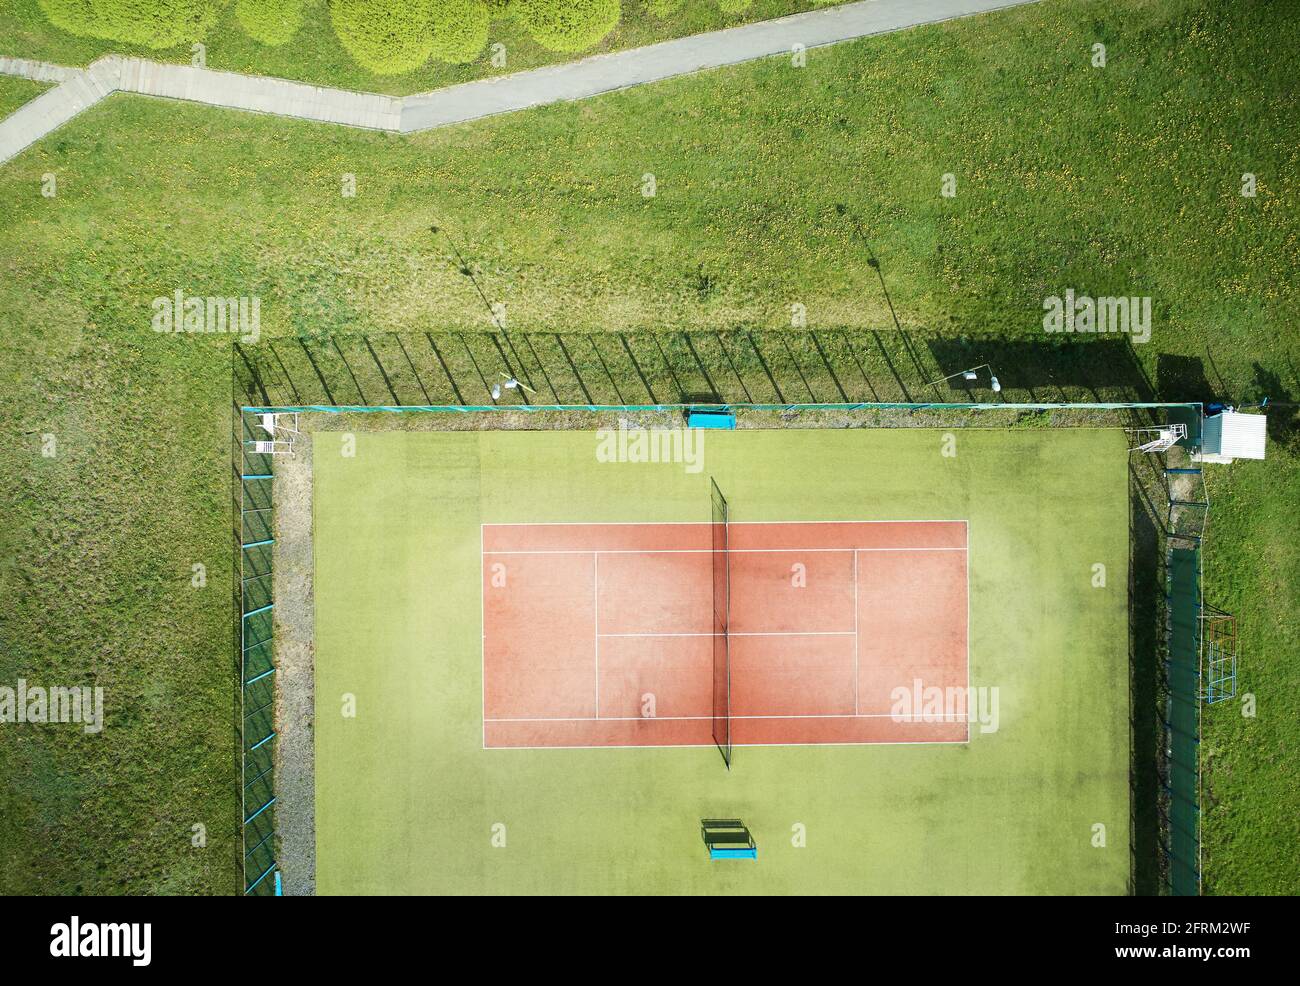 Court de tennis autour du terrain vert au-dessus de la vue de dessus de drone Banque D'Images